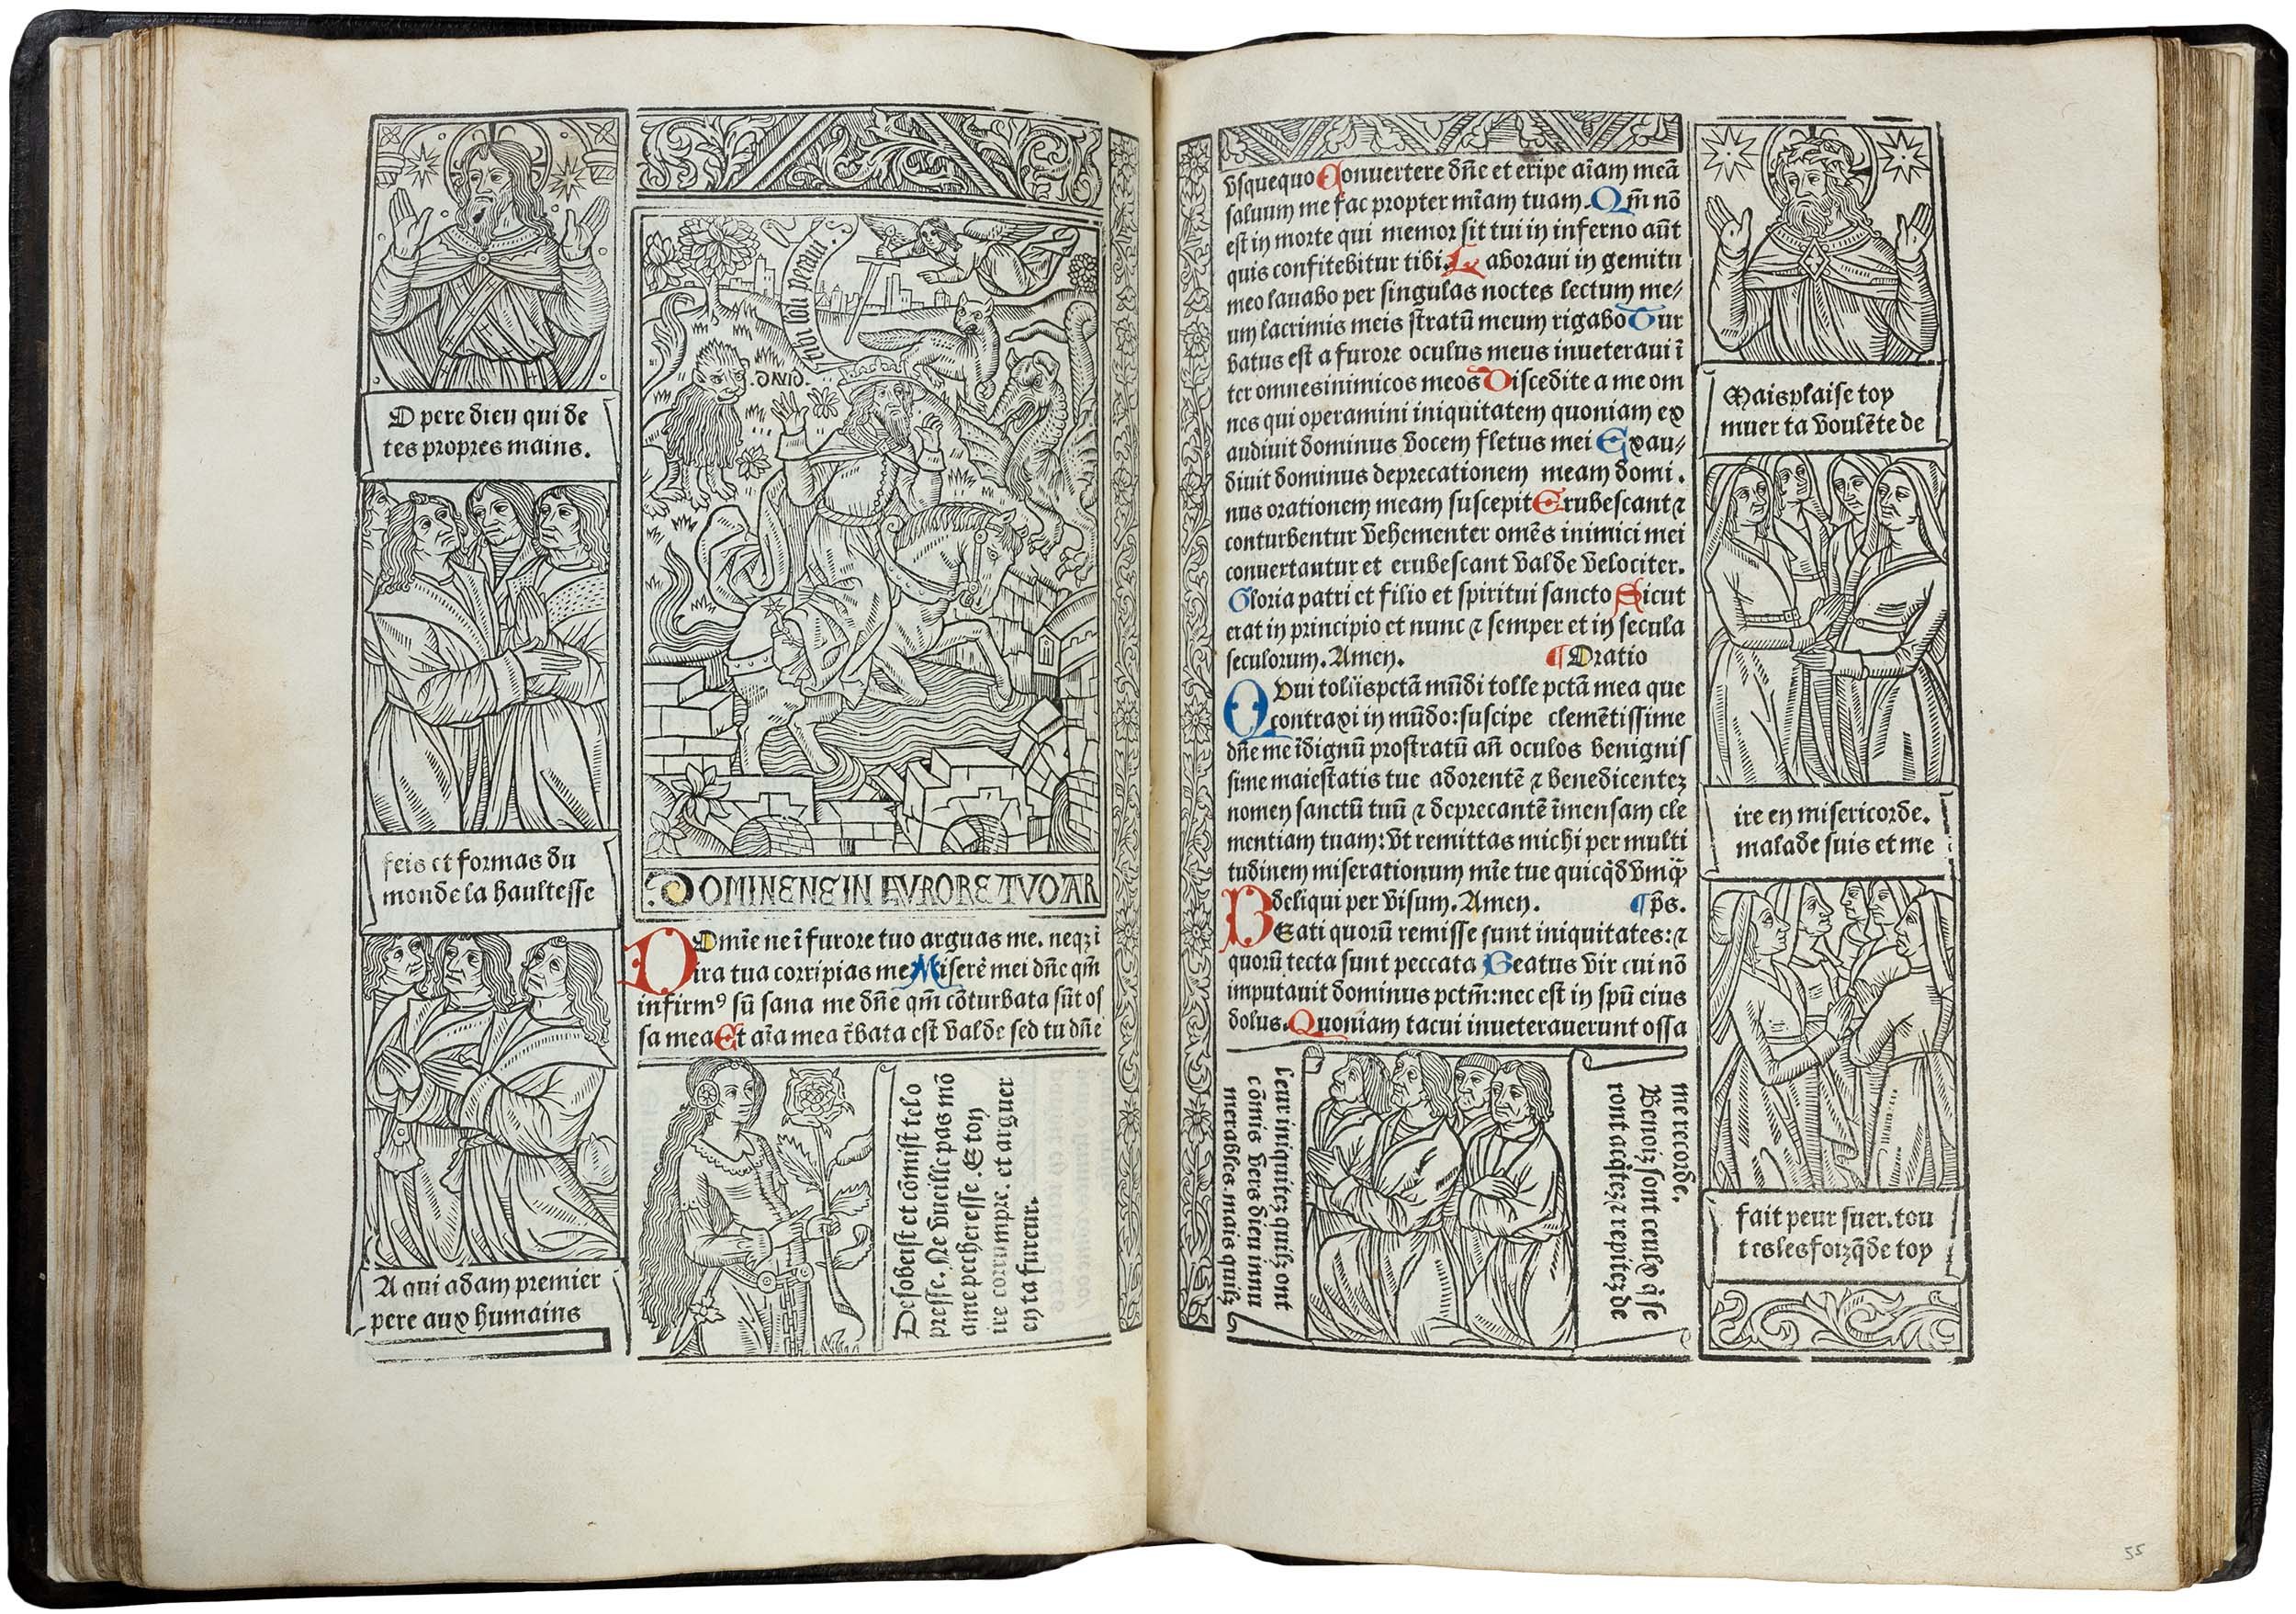 Grandes-heures-royales-verard-1488-1489-printed-book-of-hours-horae-bmv-57.jpg